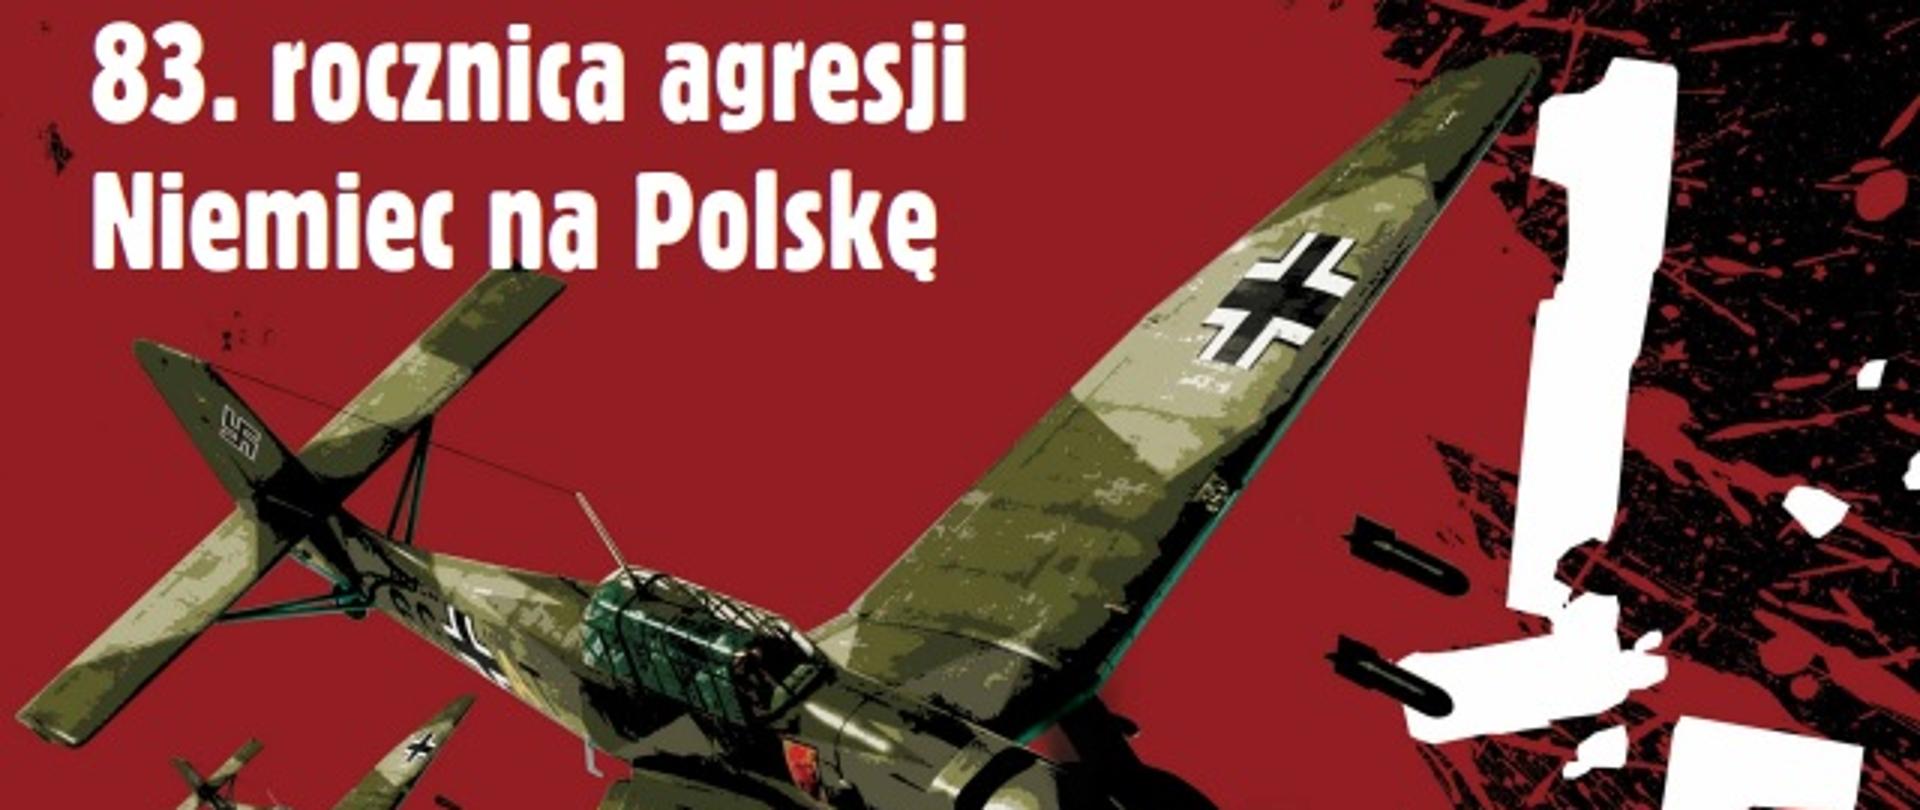 83.rocznica agresji Niemiec na Polskę - plakat